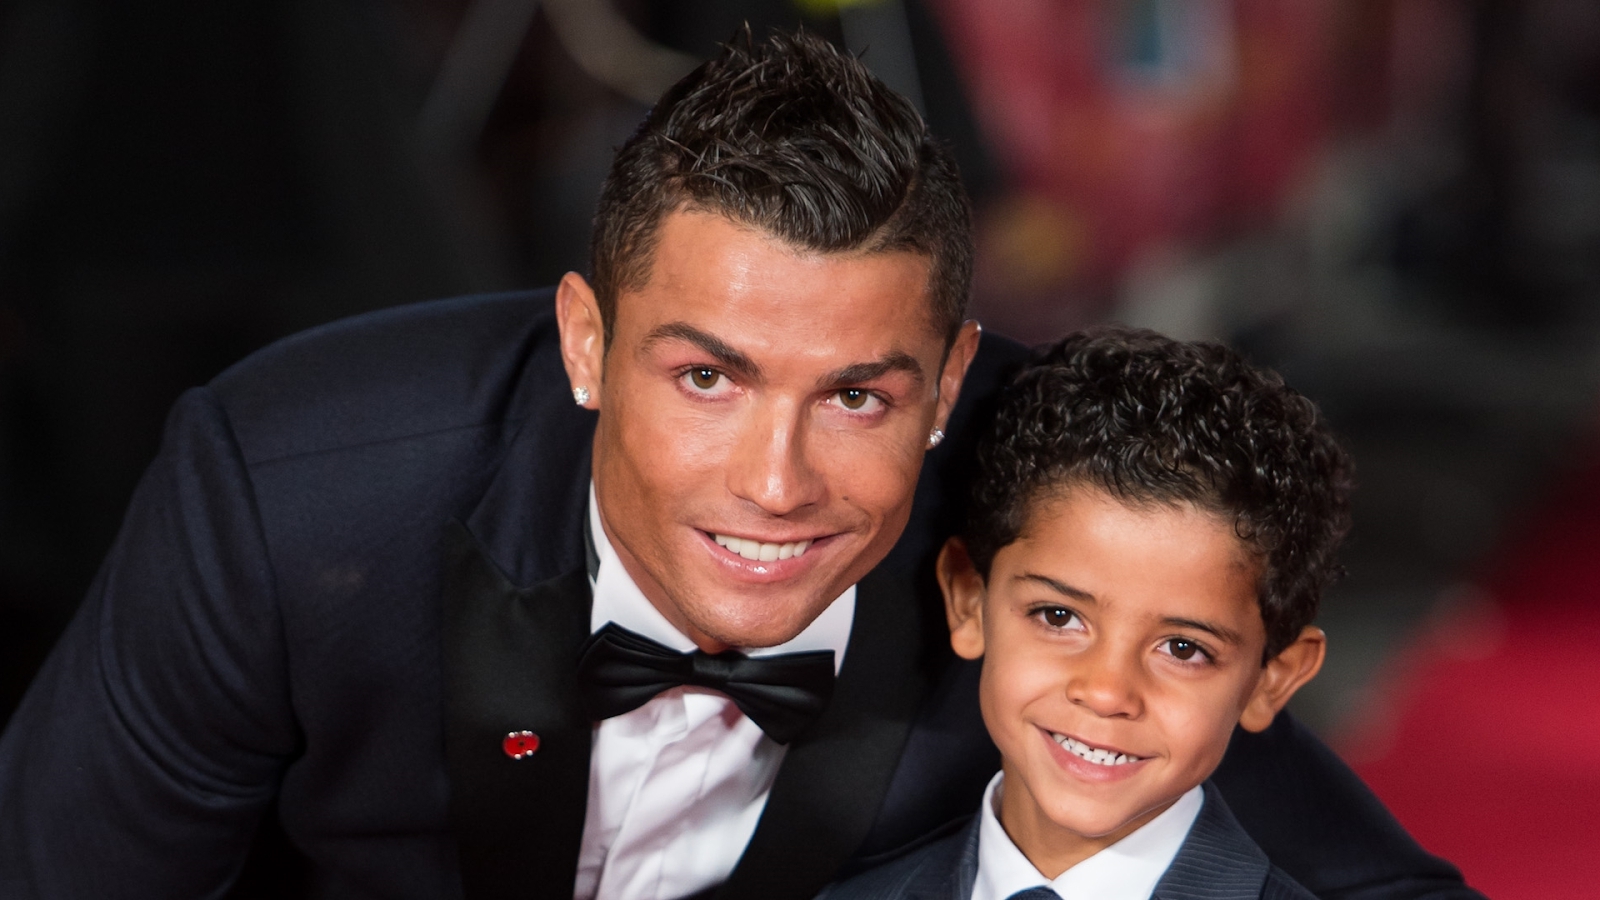 Phương pháp dạy con của cầu thủ Ronaldo: Cha mẹ làm được 5 điều này, trẻ lớn lên sẽ không thua kém “con nhà người ta”. - Ảnh 1.